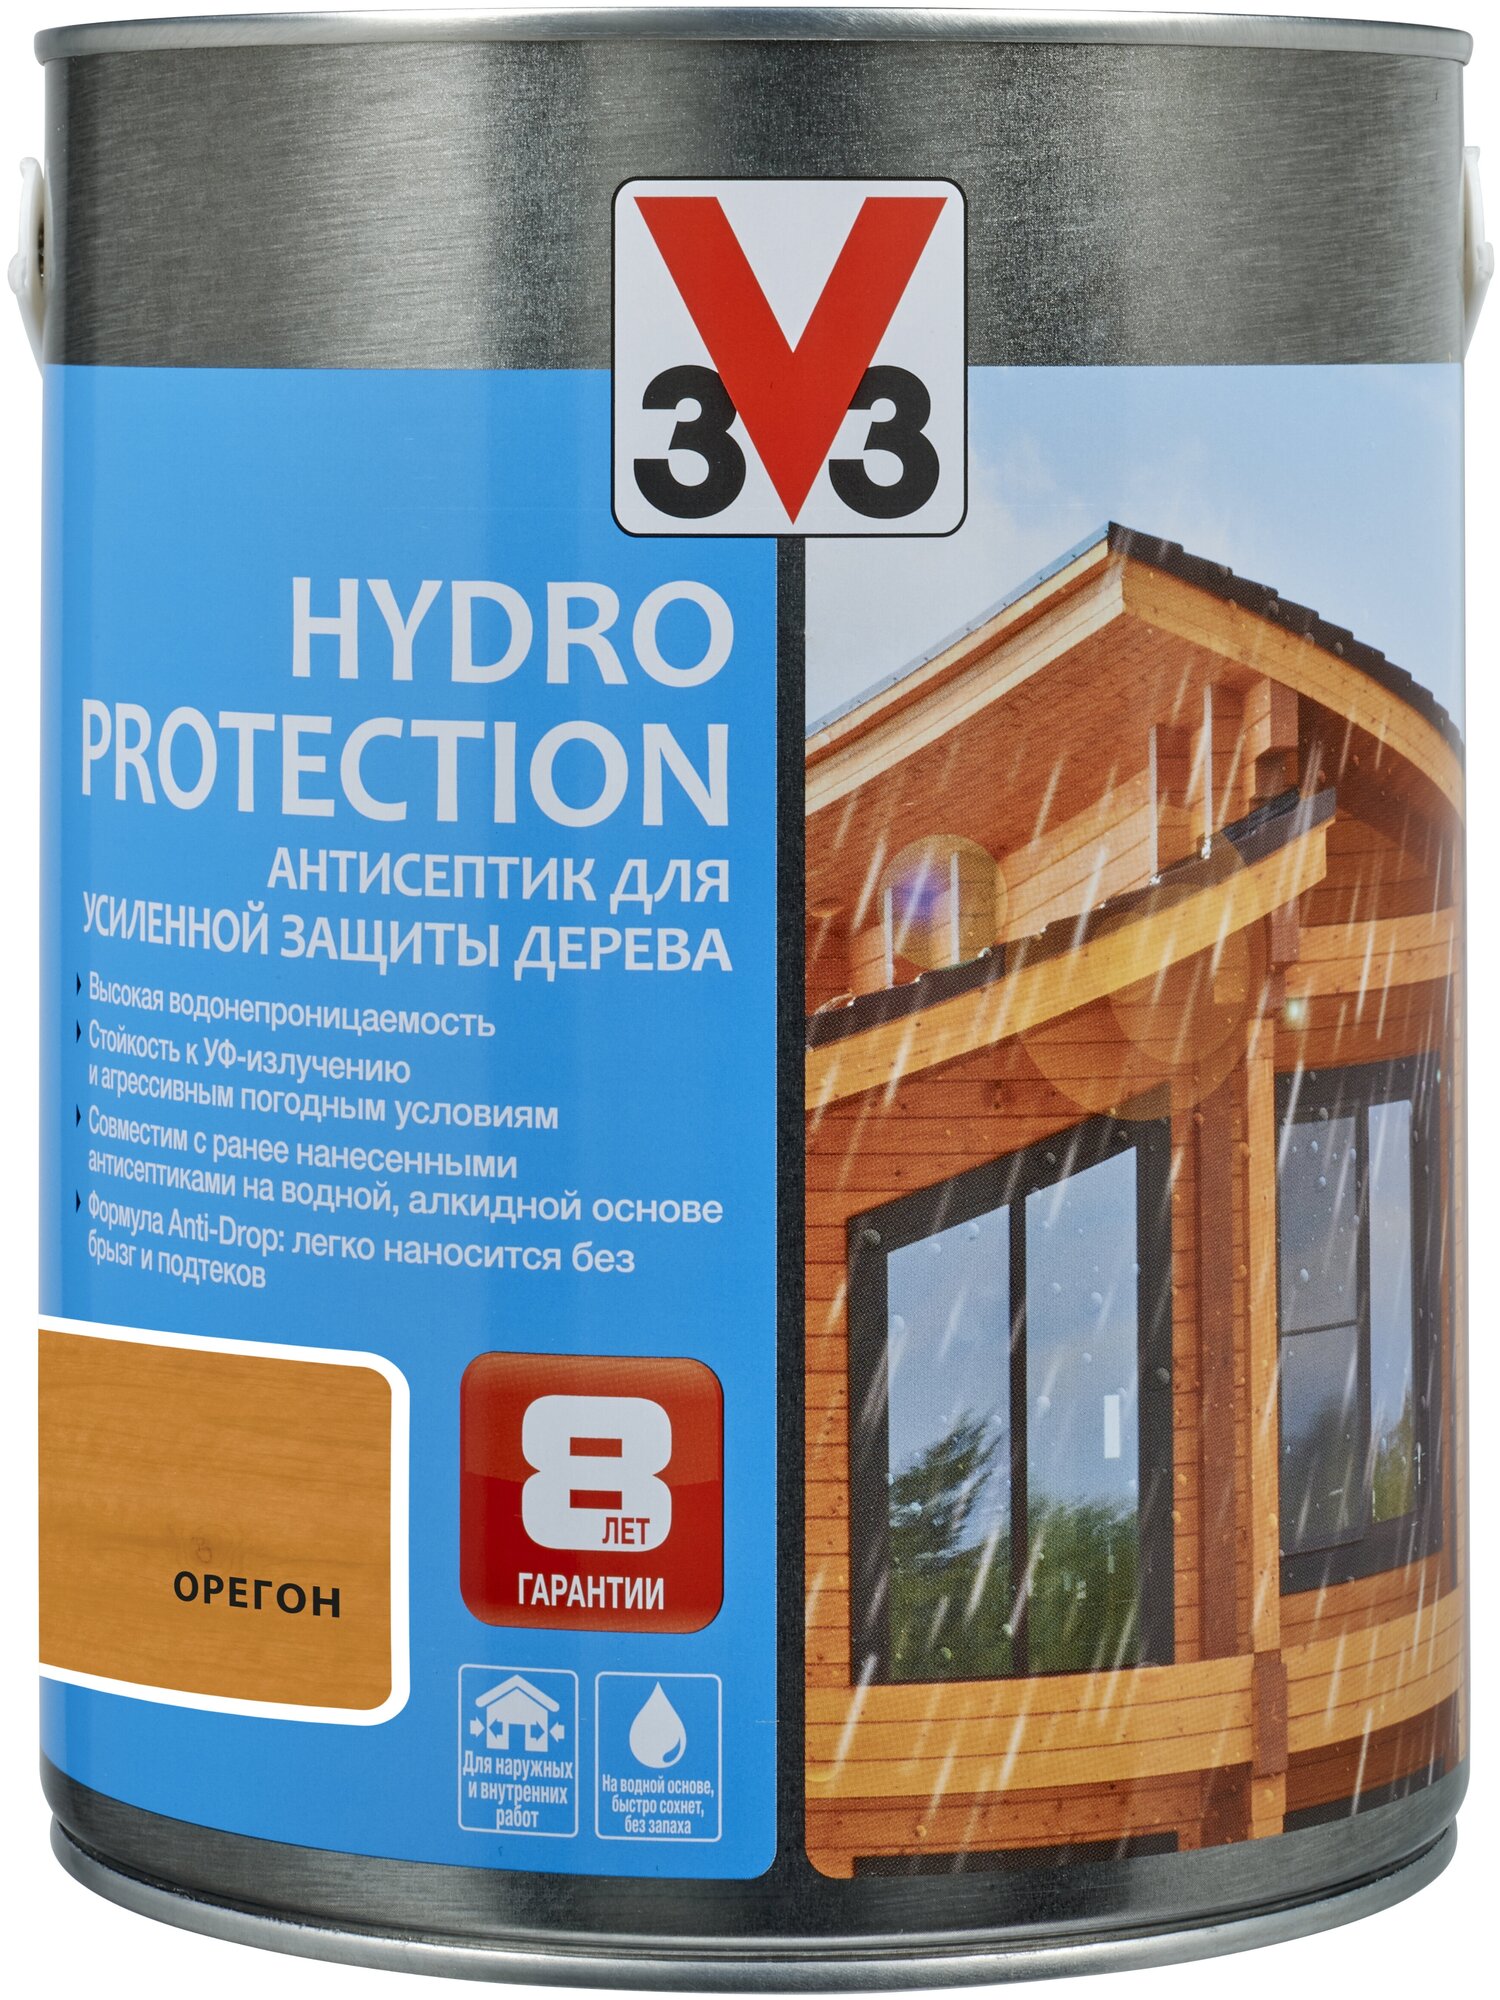 Пропитка V33 антисептик для усиленной защиты дерева Hydro Protection